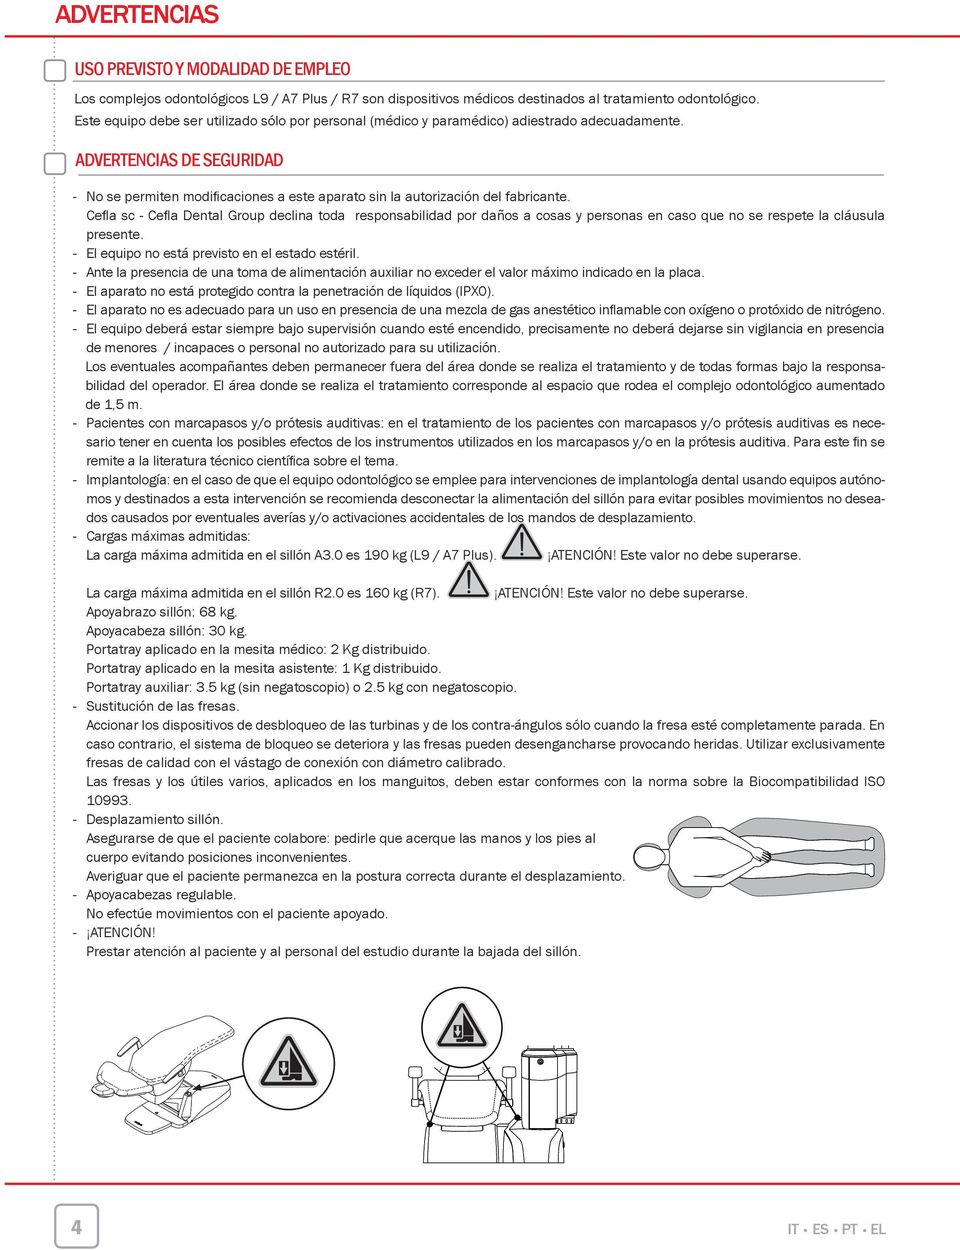 ADVERTENCIAS DE SEGURIDAD - No se permen modifi caciones a este aparato sin la autorización del fabricante.